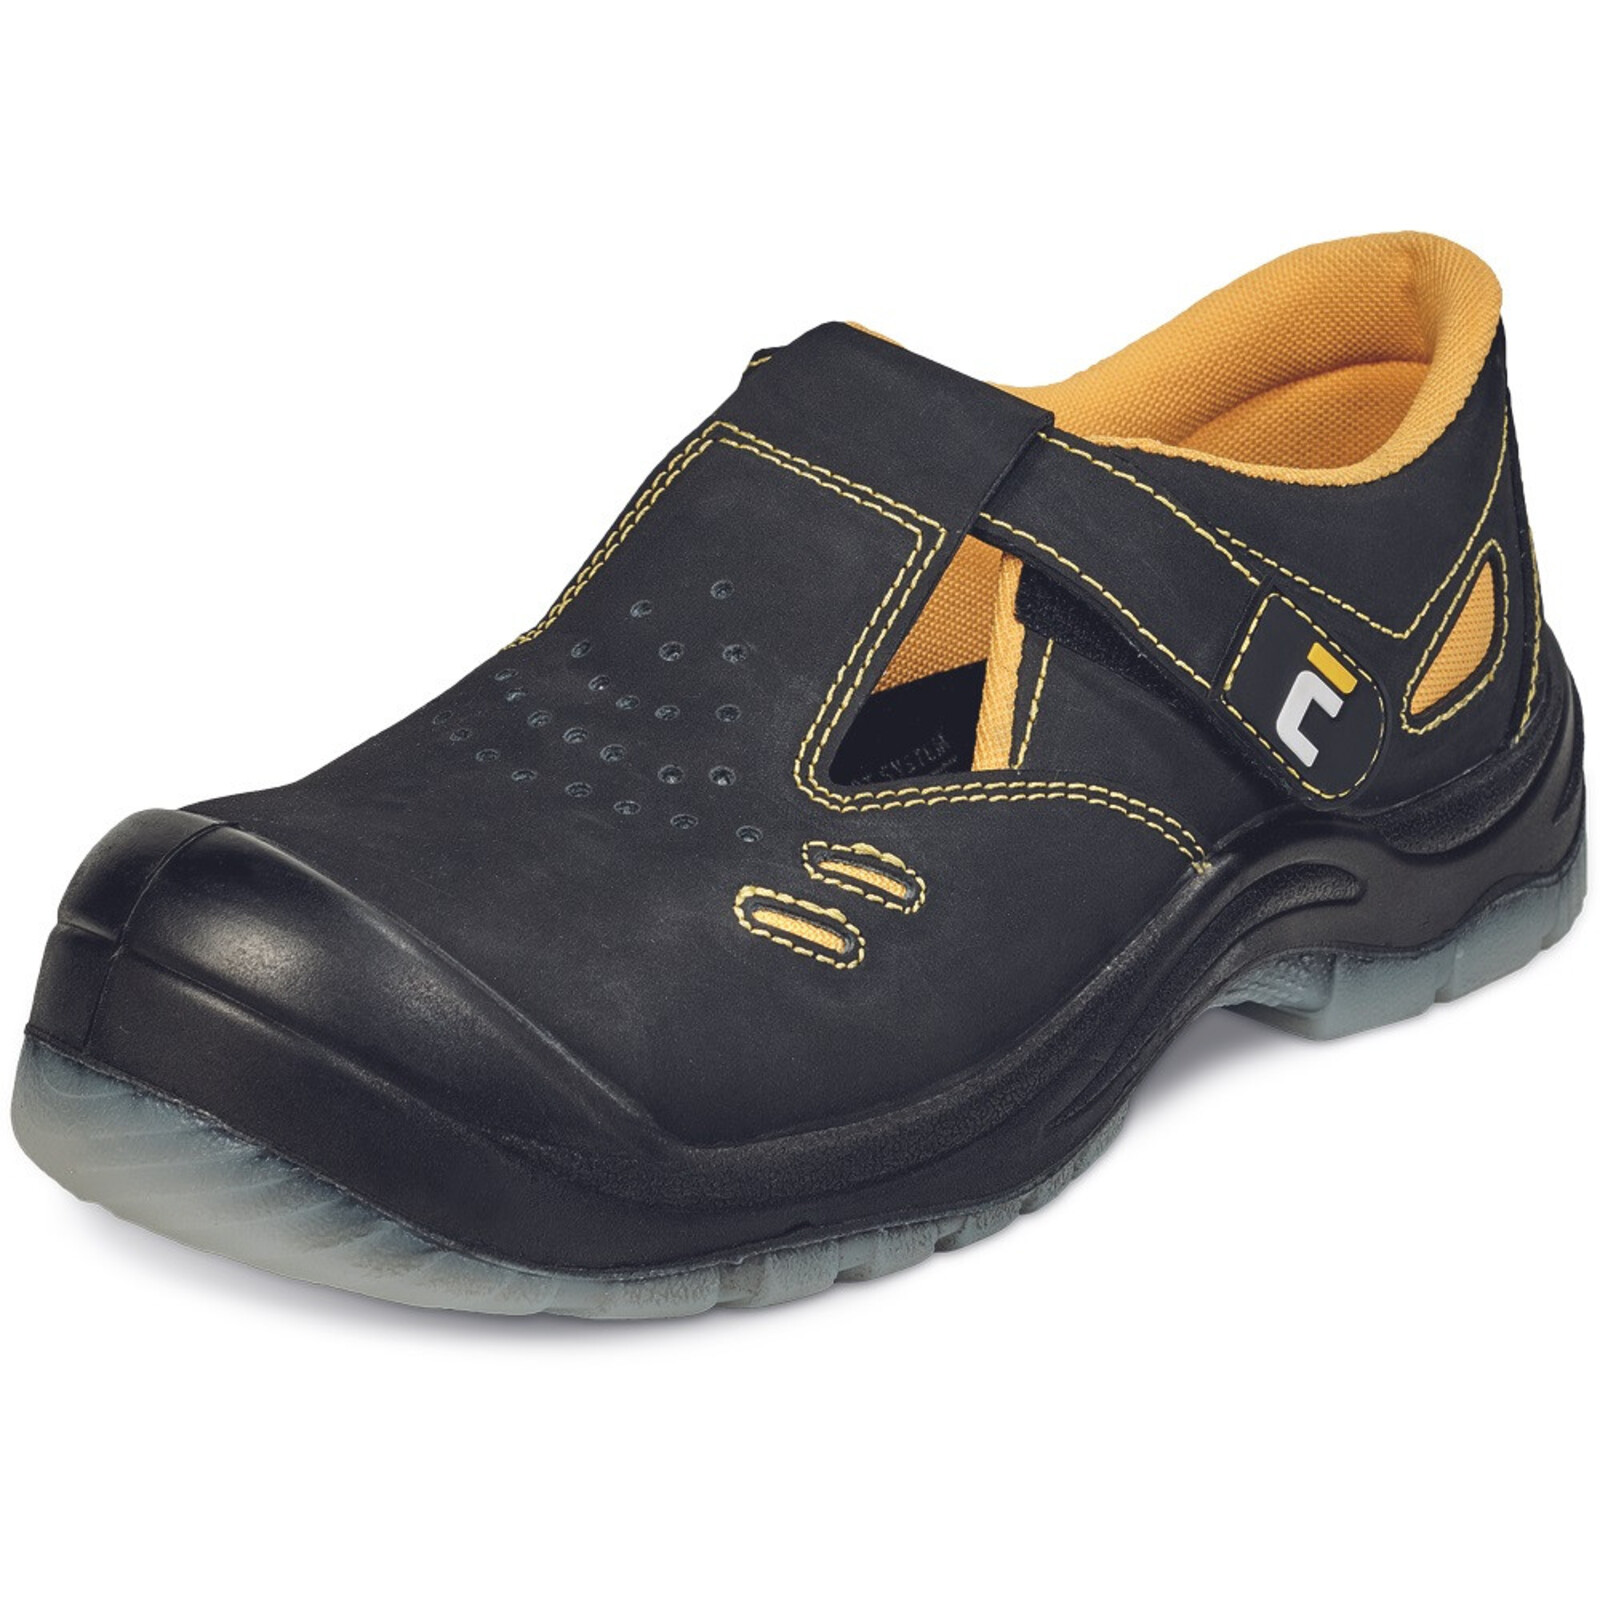 Bezpečnostné sandále Cerva BK TPU MF S1P SRC - veľkosť: 41, farba: čierna/žltá